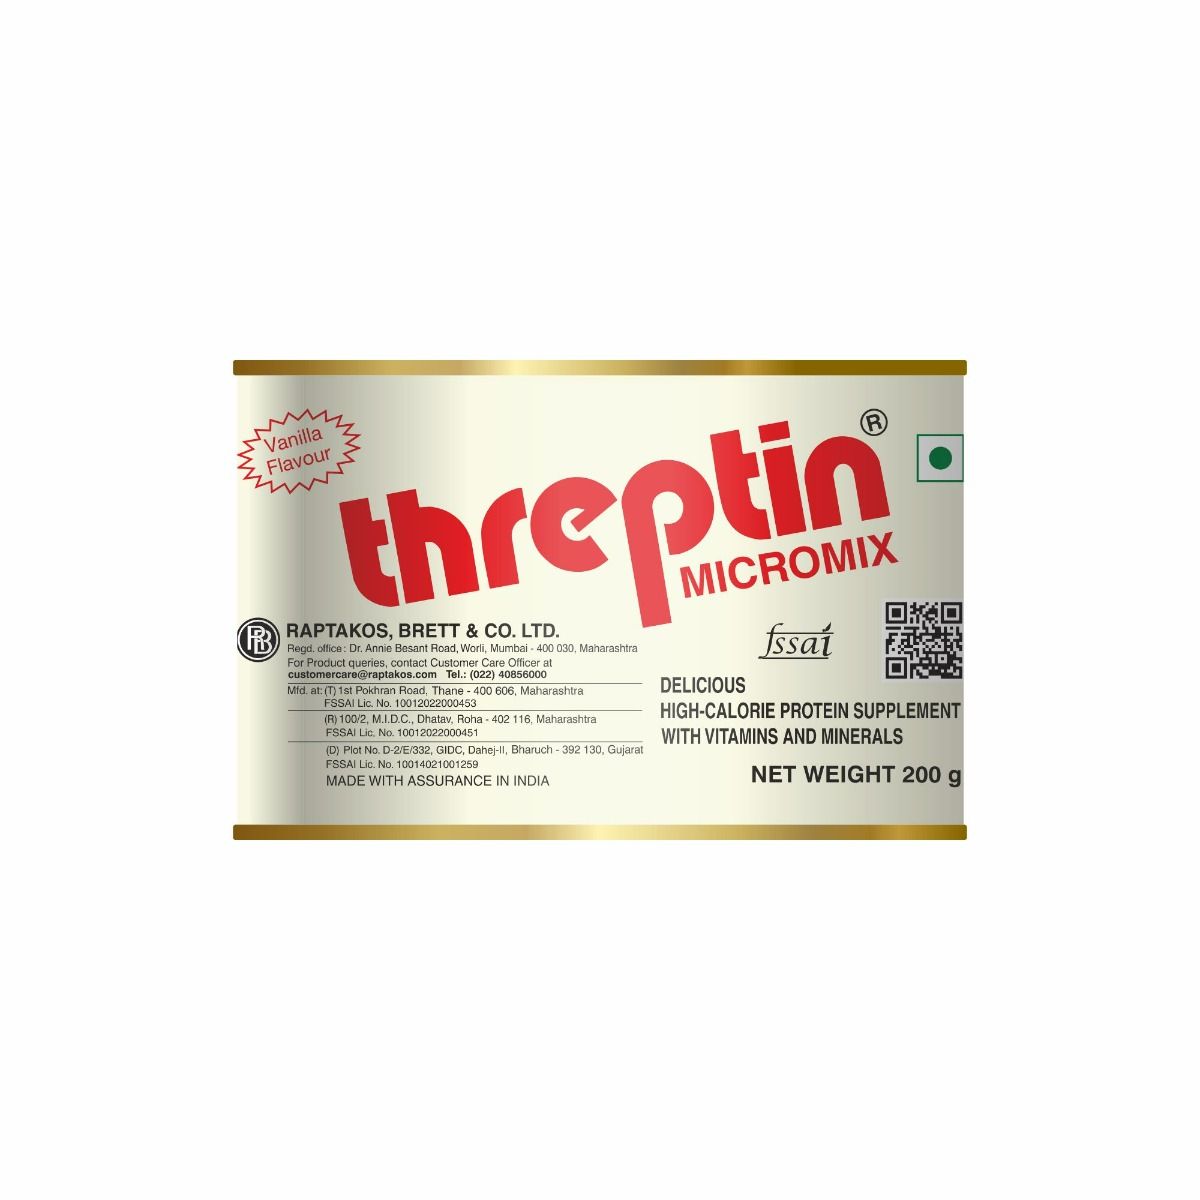 Buy Threptin Micromix Vanilla Flavoured Powder, 200 gm Online